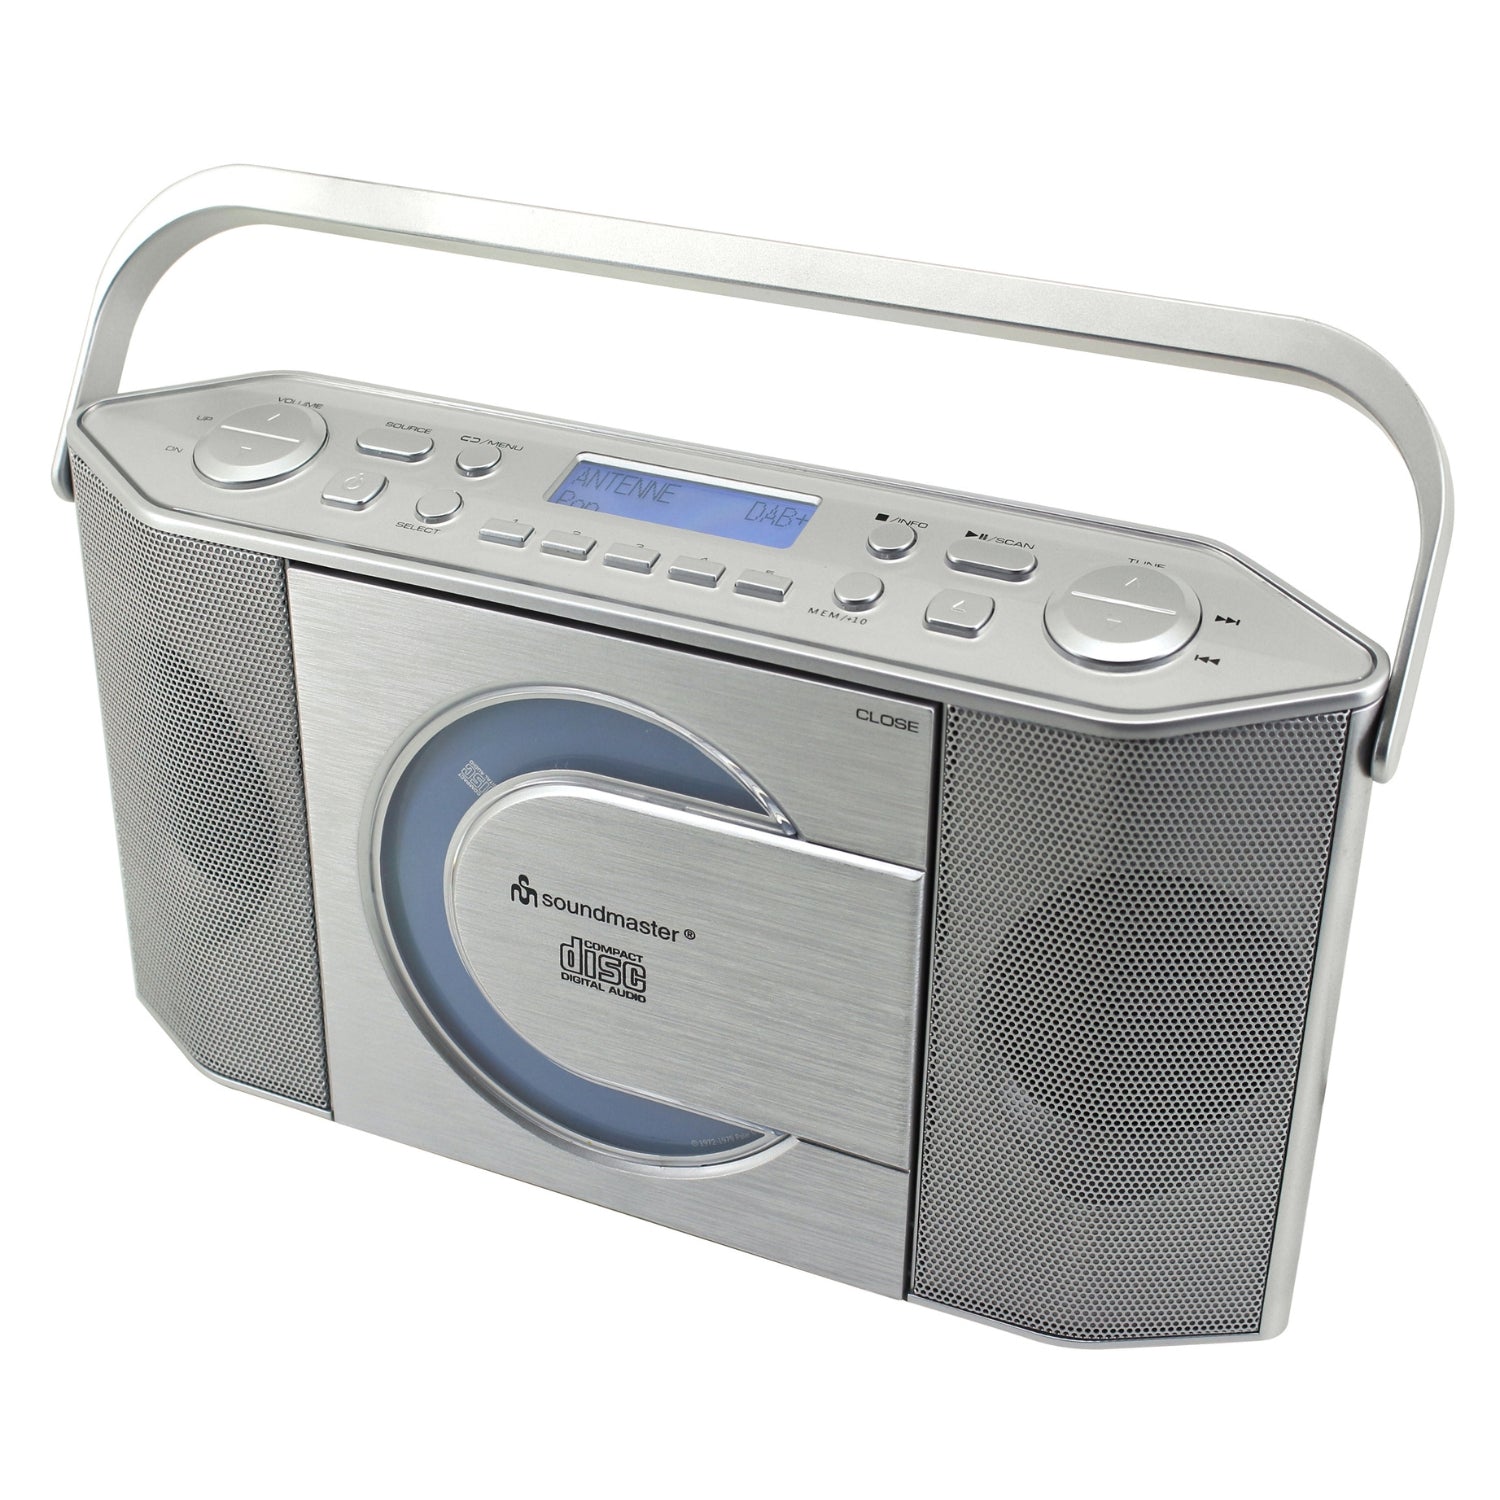 Soundmaster RCD1770SI enregistreur radio numérique DAB+ avec USB et lecteur CD casque MP3 horloge